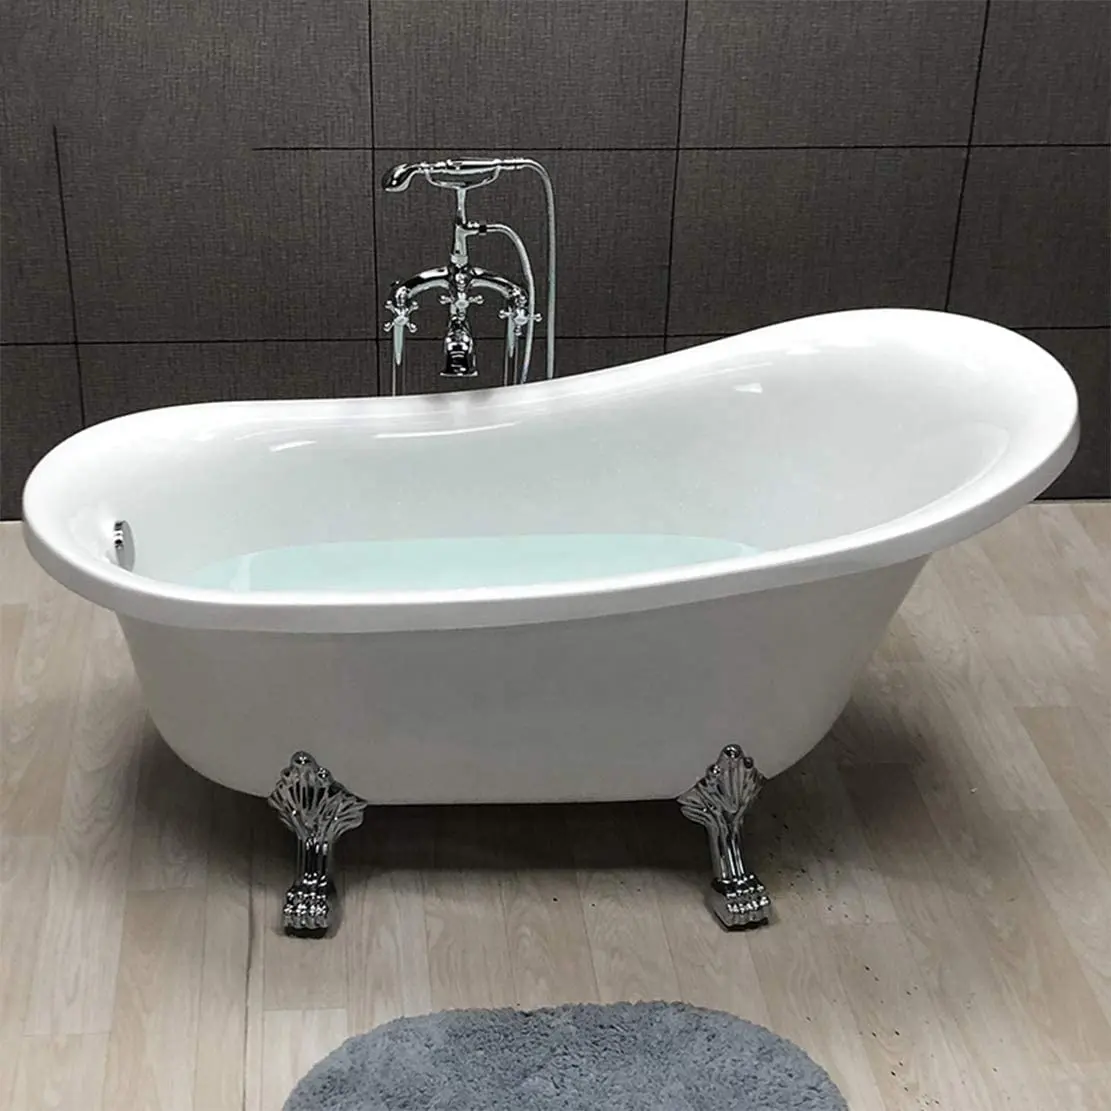 Medyag सफेद एक्रिलिक बाथटब आधुनिक खड़े हो जाओ अकेले स्नान टब के साथ चांदी का समर्थन पैर आरामदायक Bathtubs